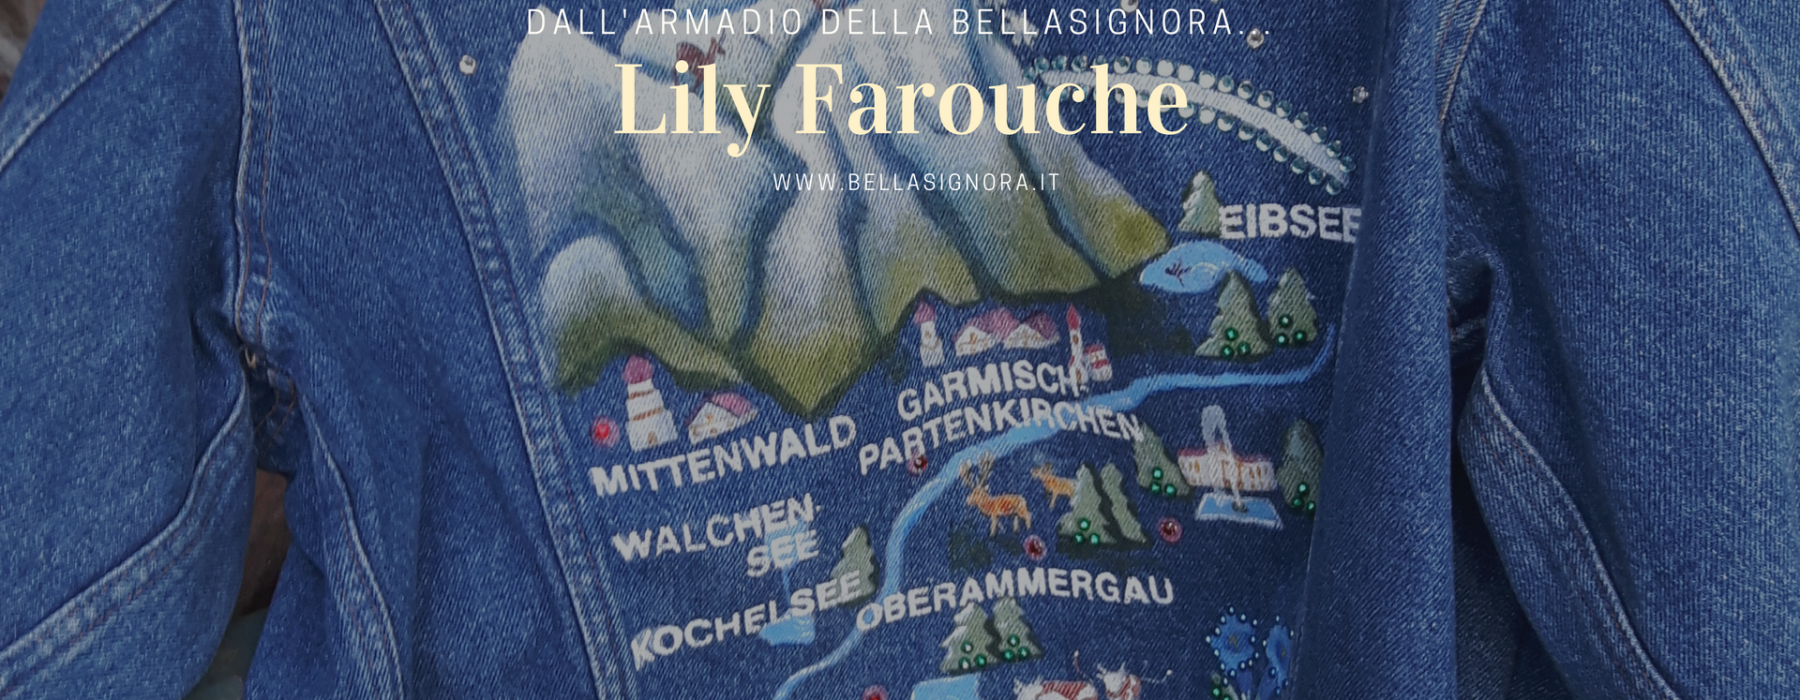 Dall’armadio della Bellasignora: l’estro mitteleuropeo di Lily Farouche.